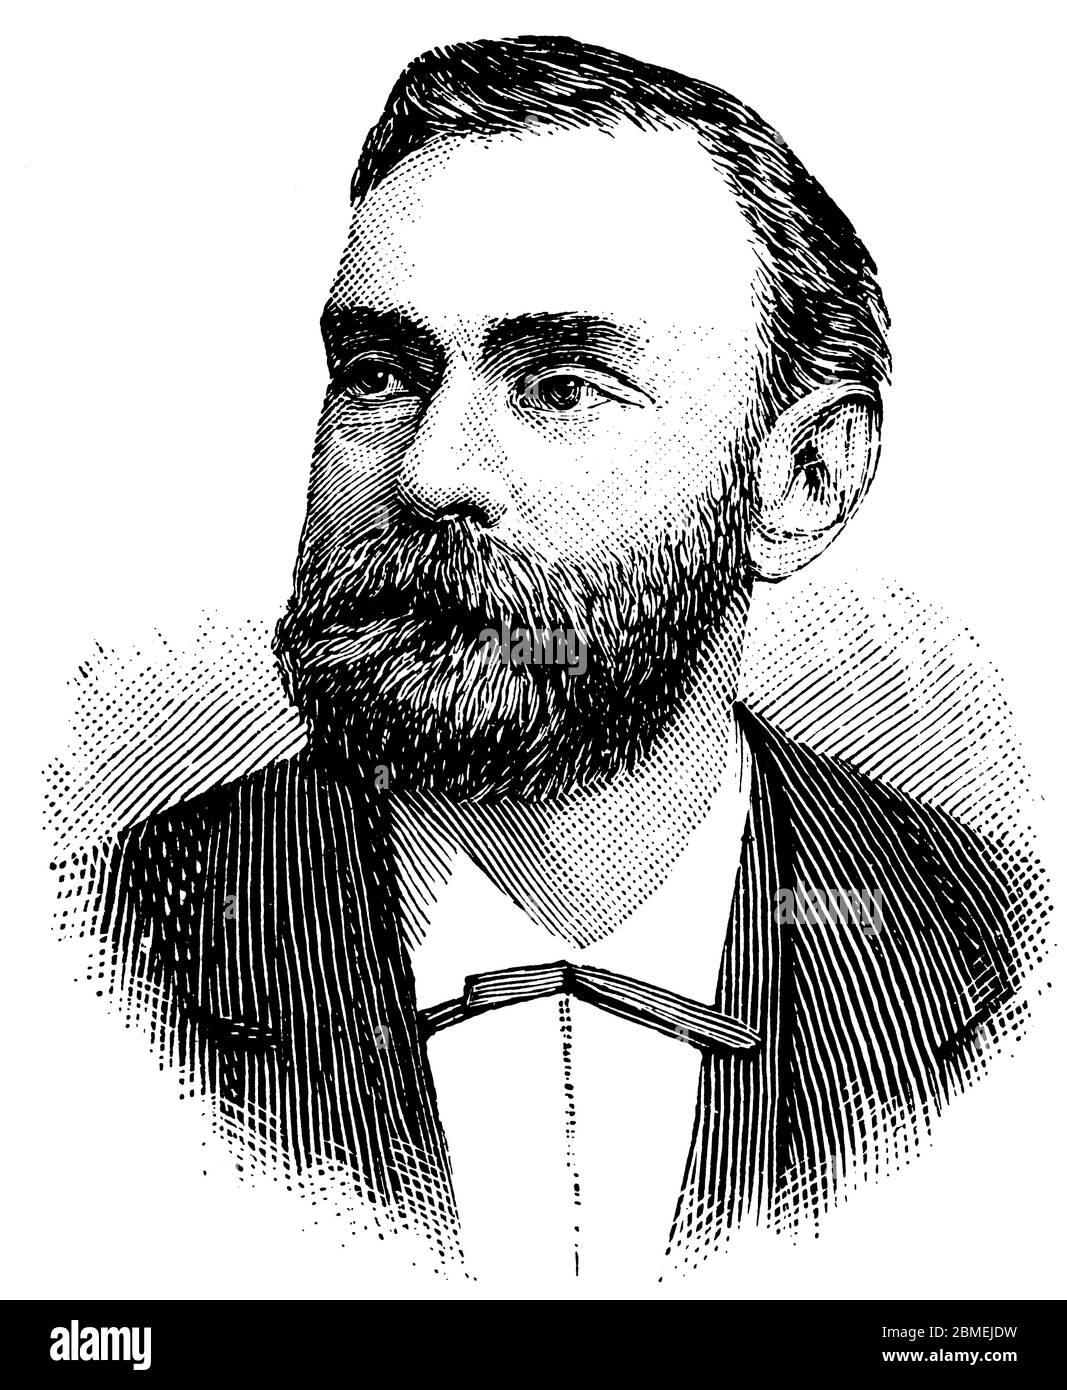 Alfred Bernhard Nobel (1833-1896), químico e ingeniero sueco y creador de los premios que llevan su nombre. Stock Photo